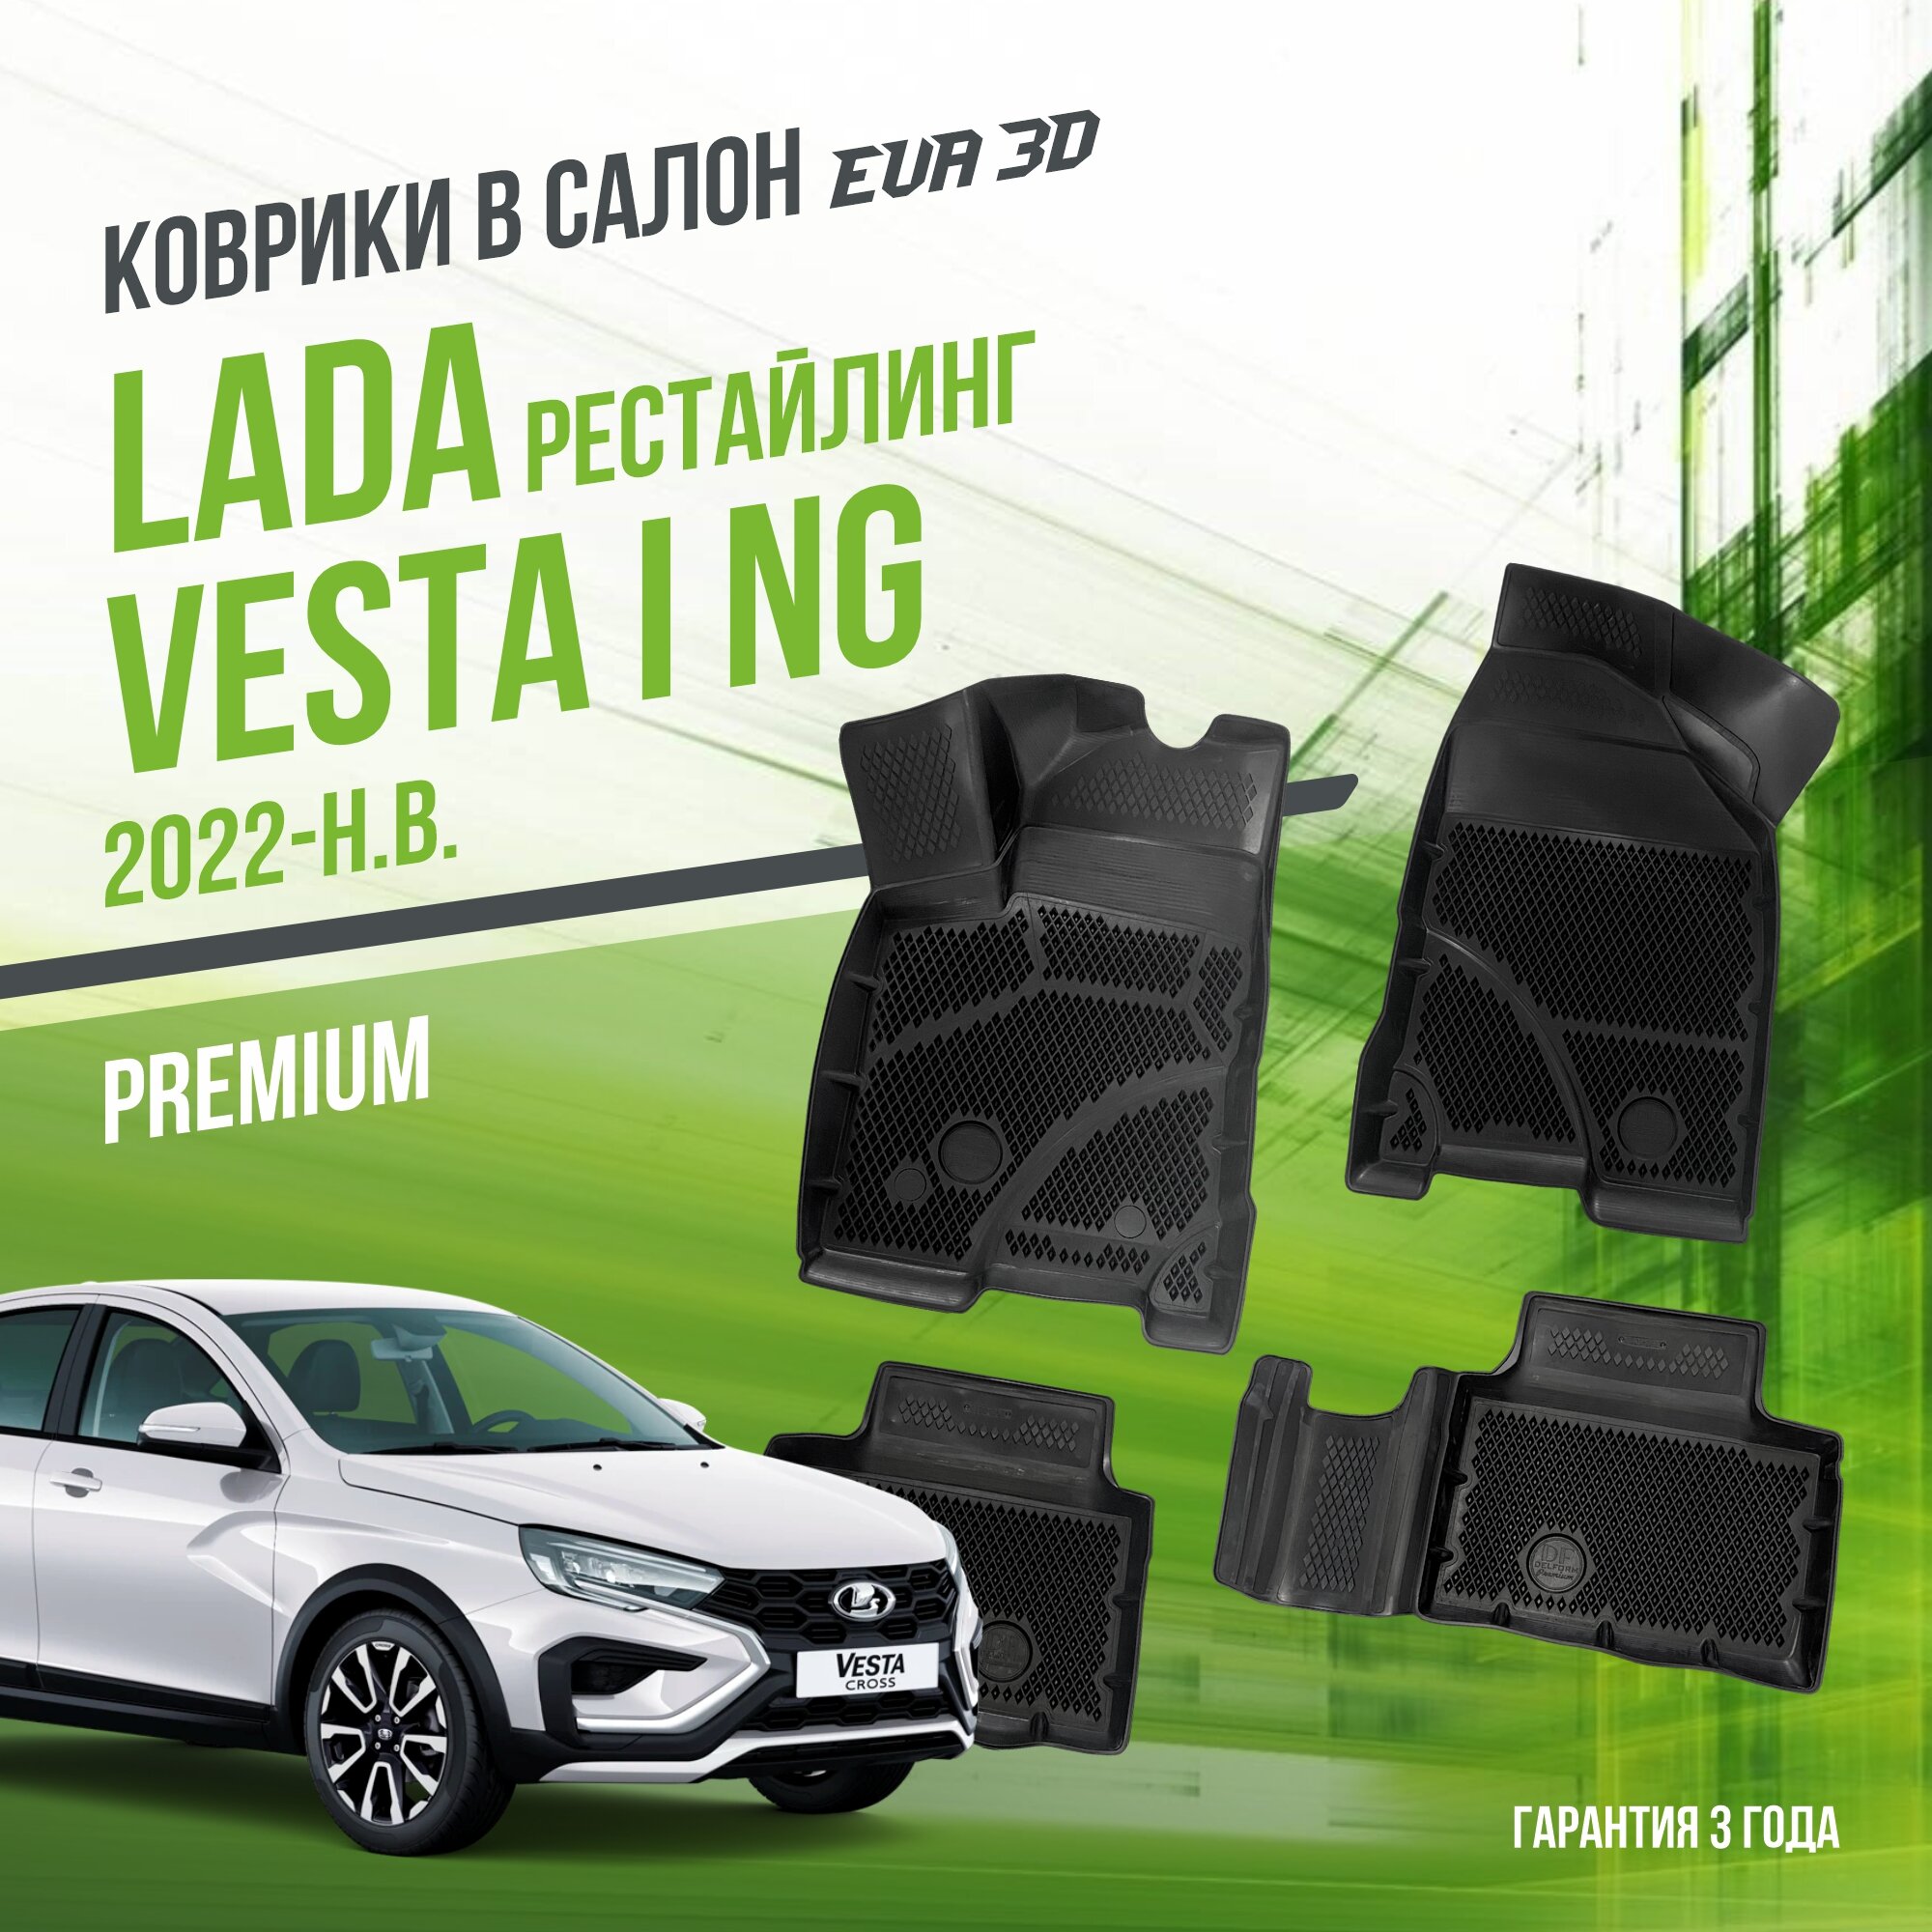 Коврики в салон Lada Vesta (2022-н. в.) NG рестайл / Лада Веста "Premium" набор ковров DelForm с бортами и ячейками EVA 3D / ЭВА 3Д